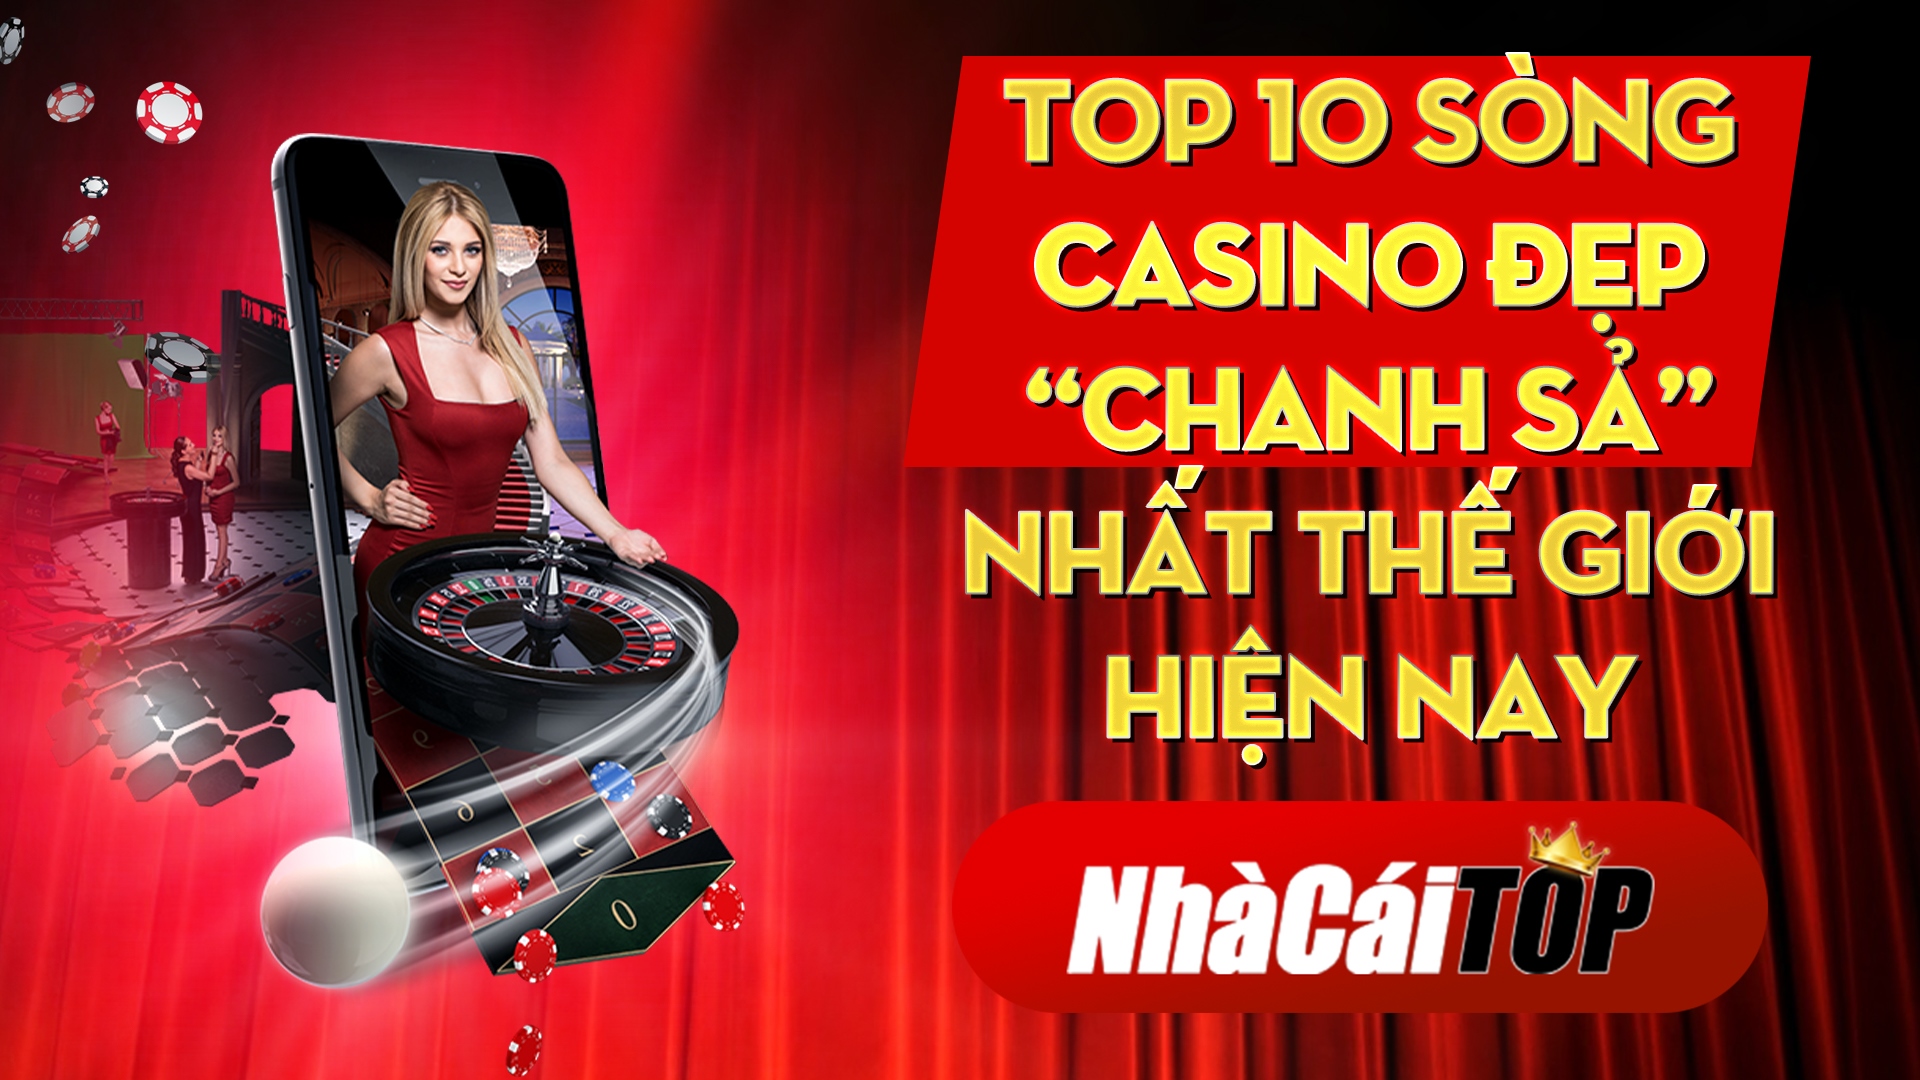 Top 10 sòng casino đẹp “chanh sả” nhất thế giới hiện nay